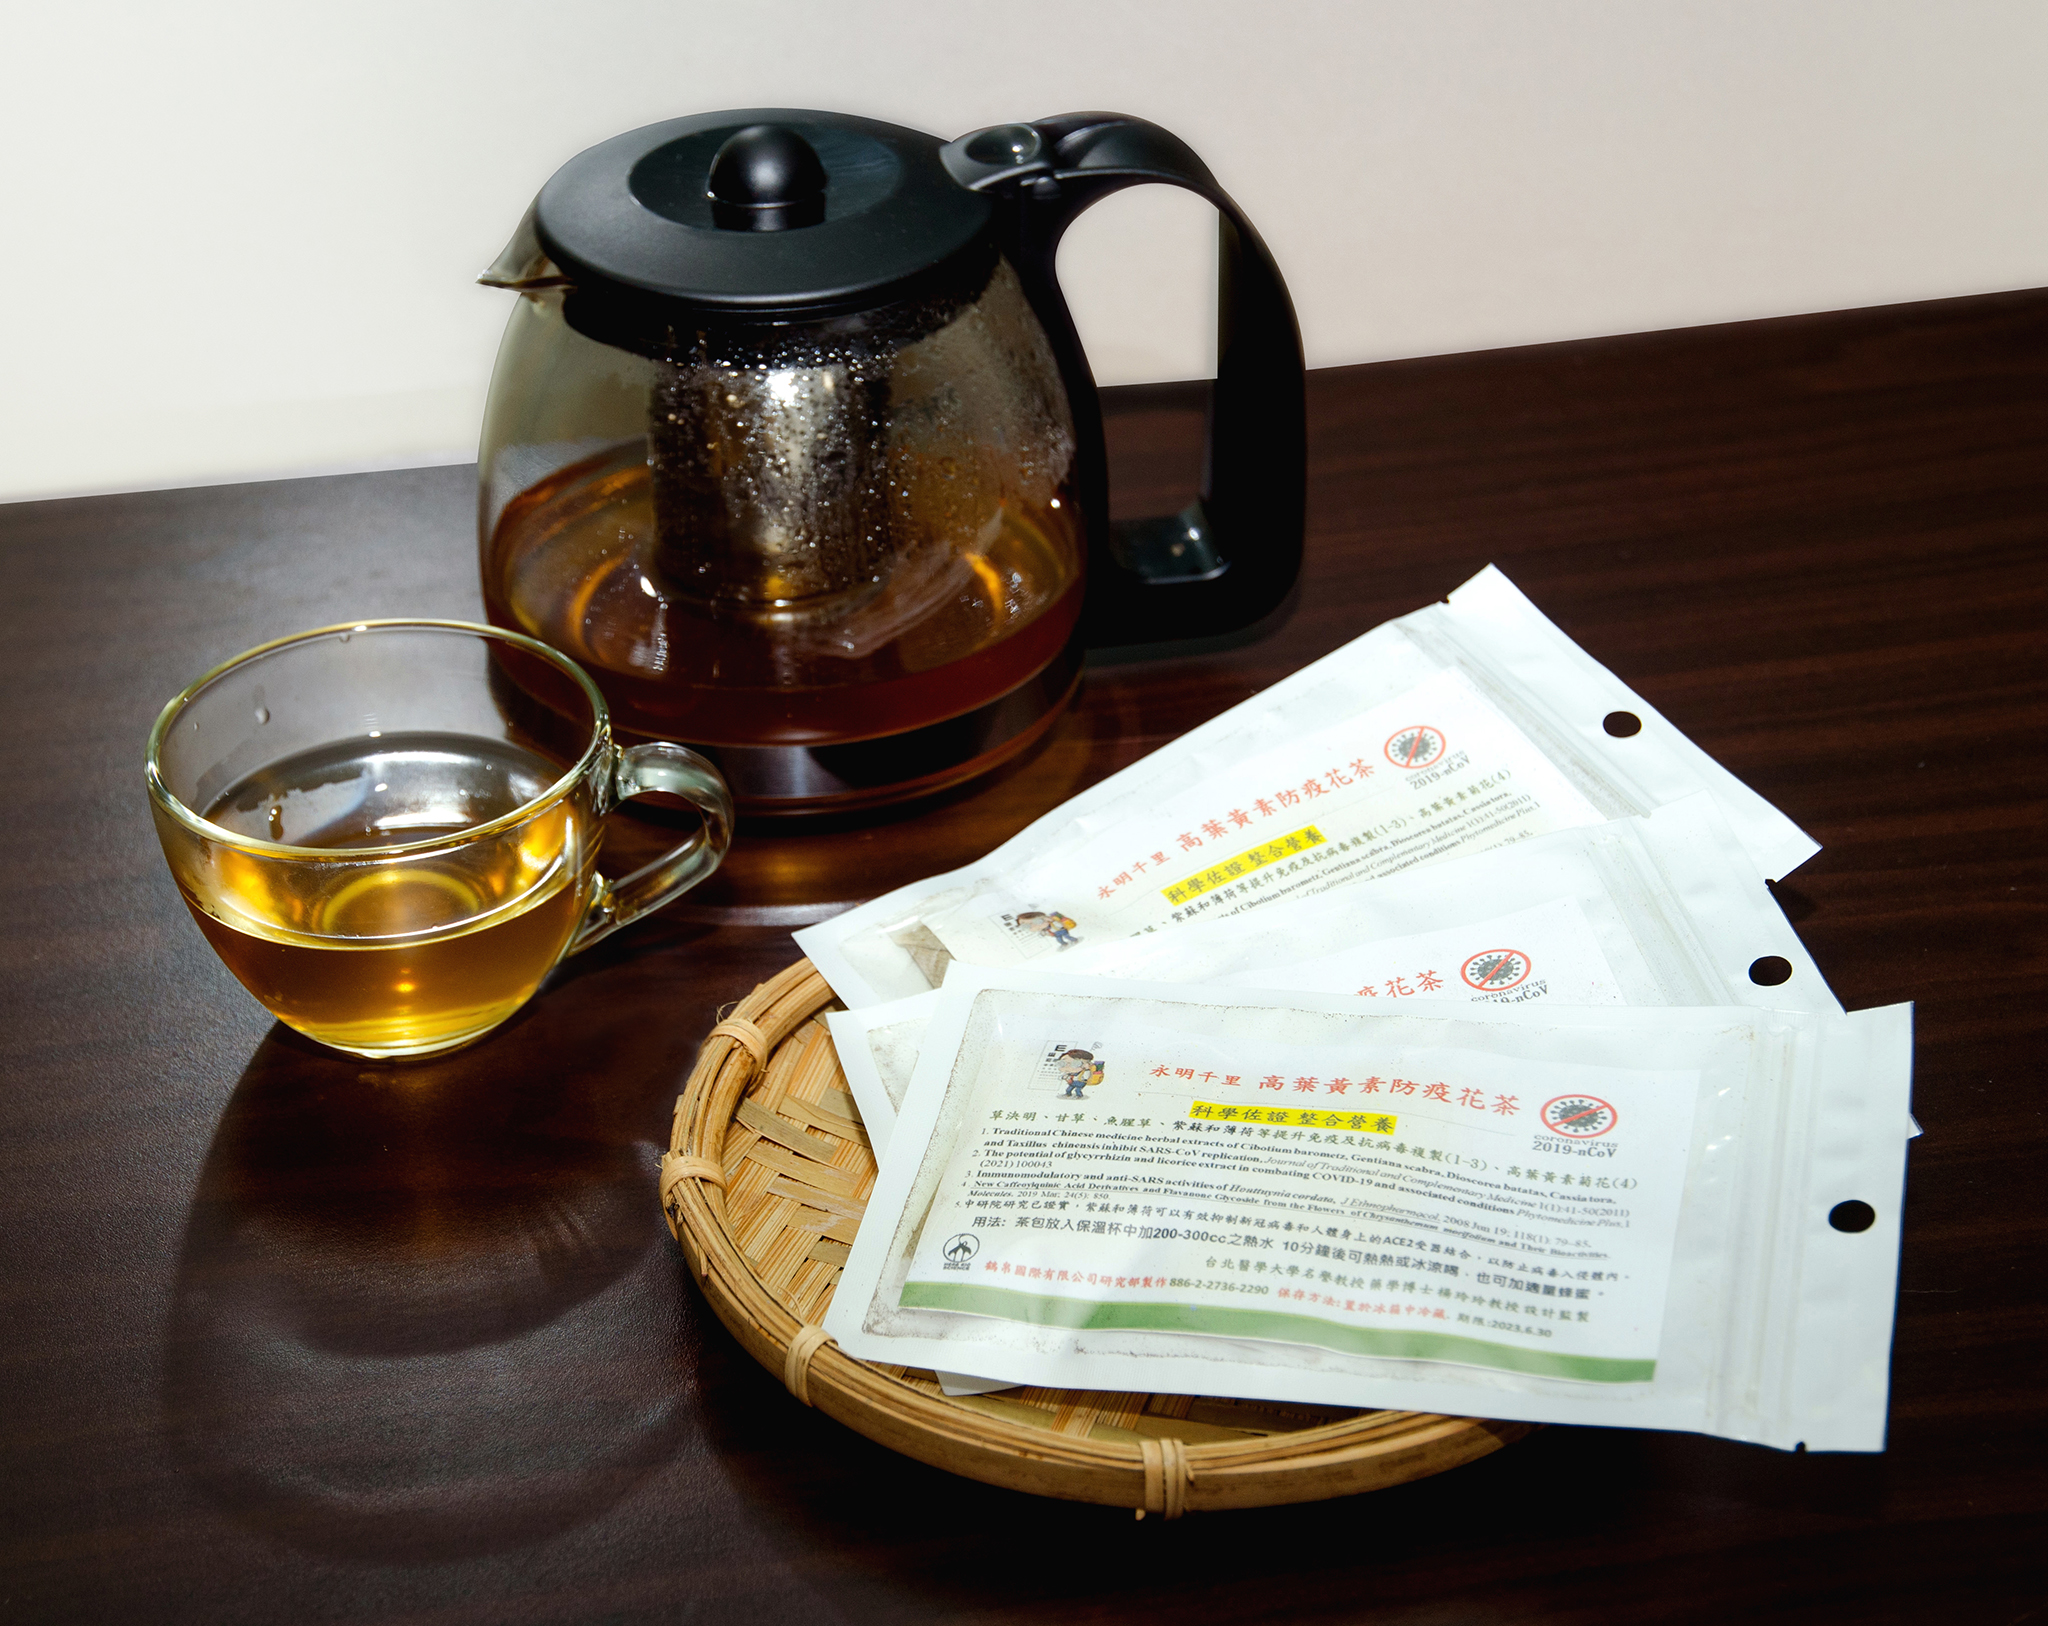 鶴帛國際主打客製化專案的合作模式，由楊玲玲教授配合客戶需求設計各種藥膳茶飲，圖為「永明千里高葉黃素防疫花茶」。